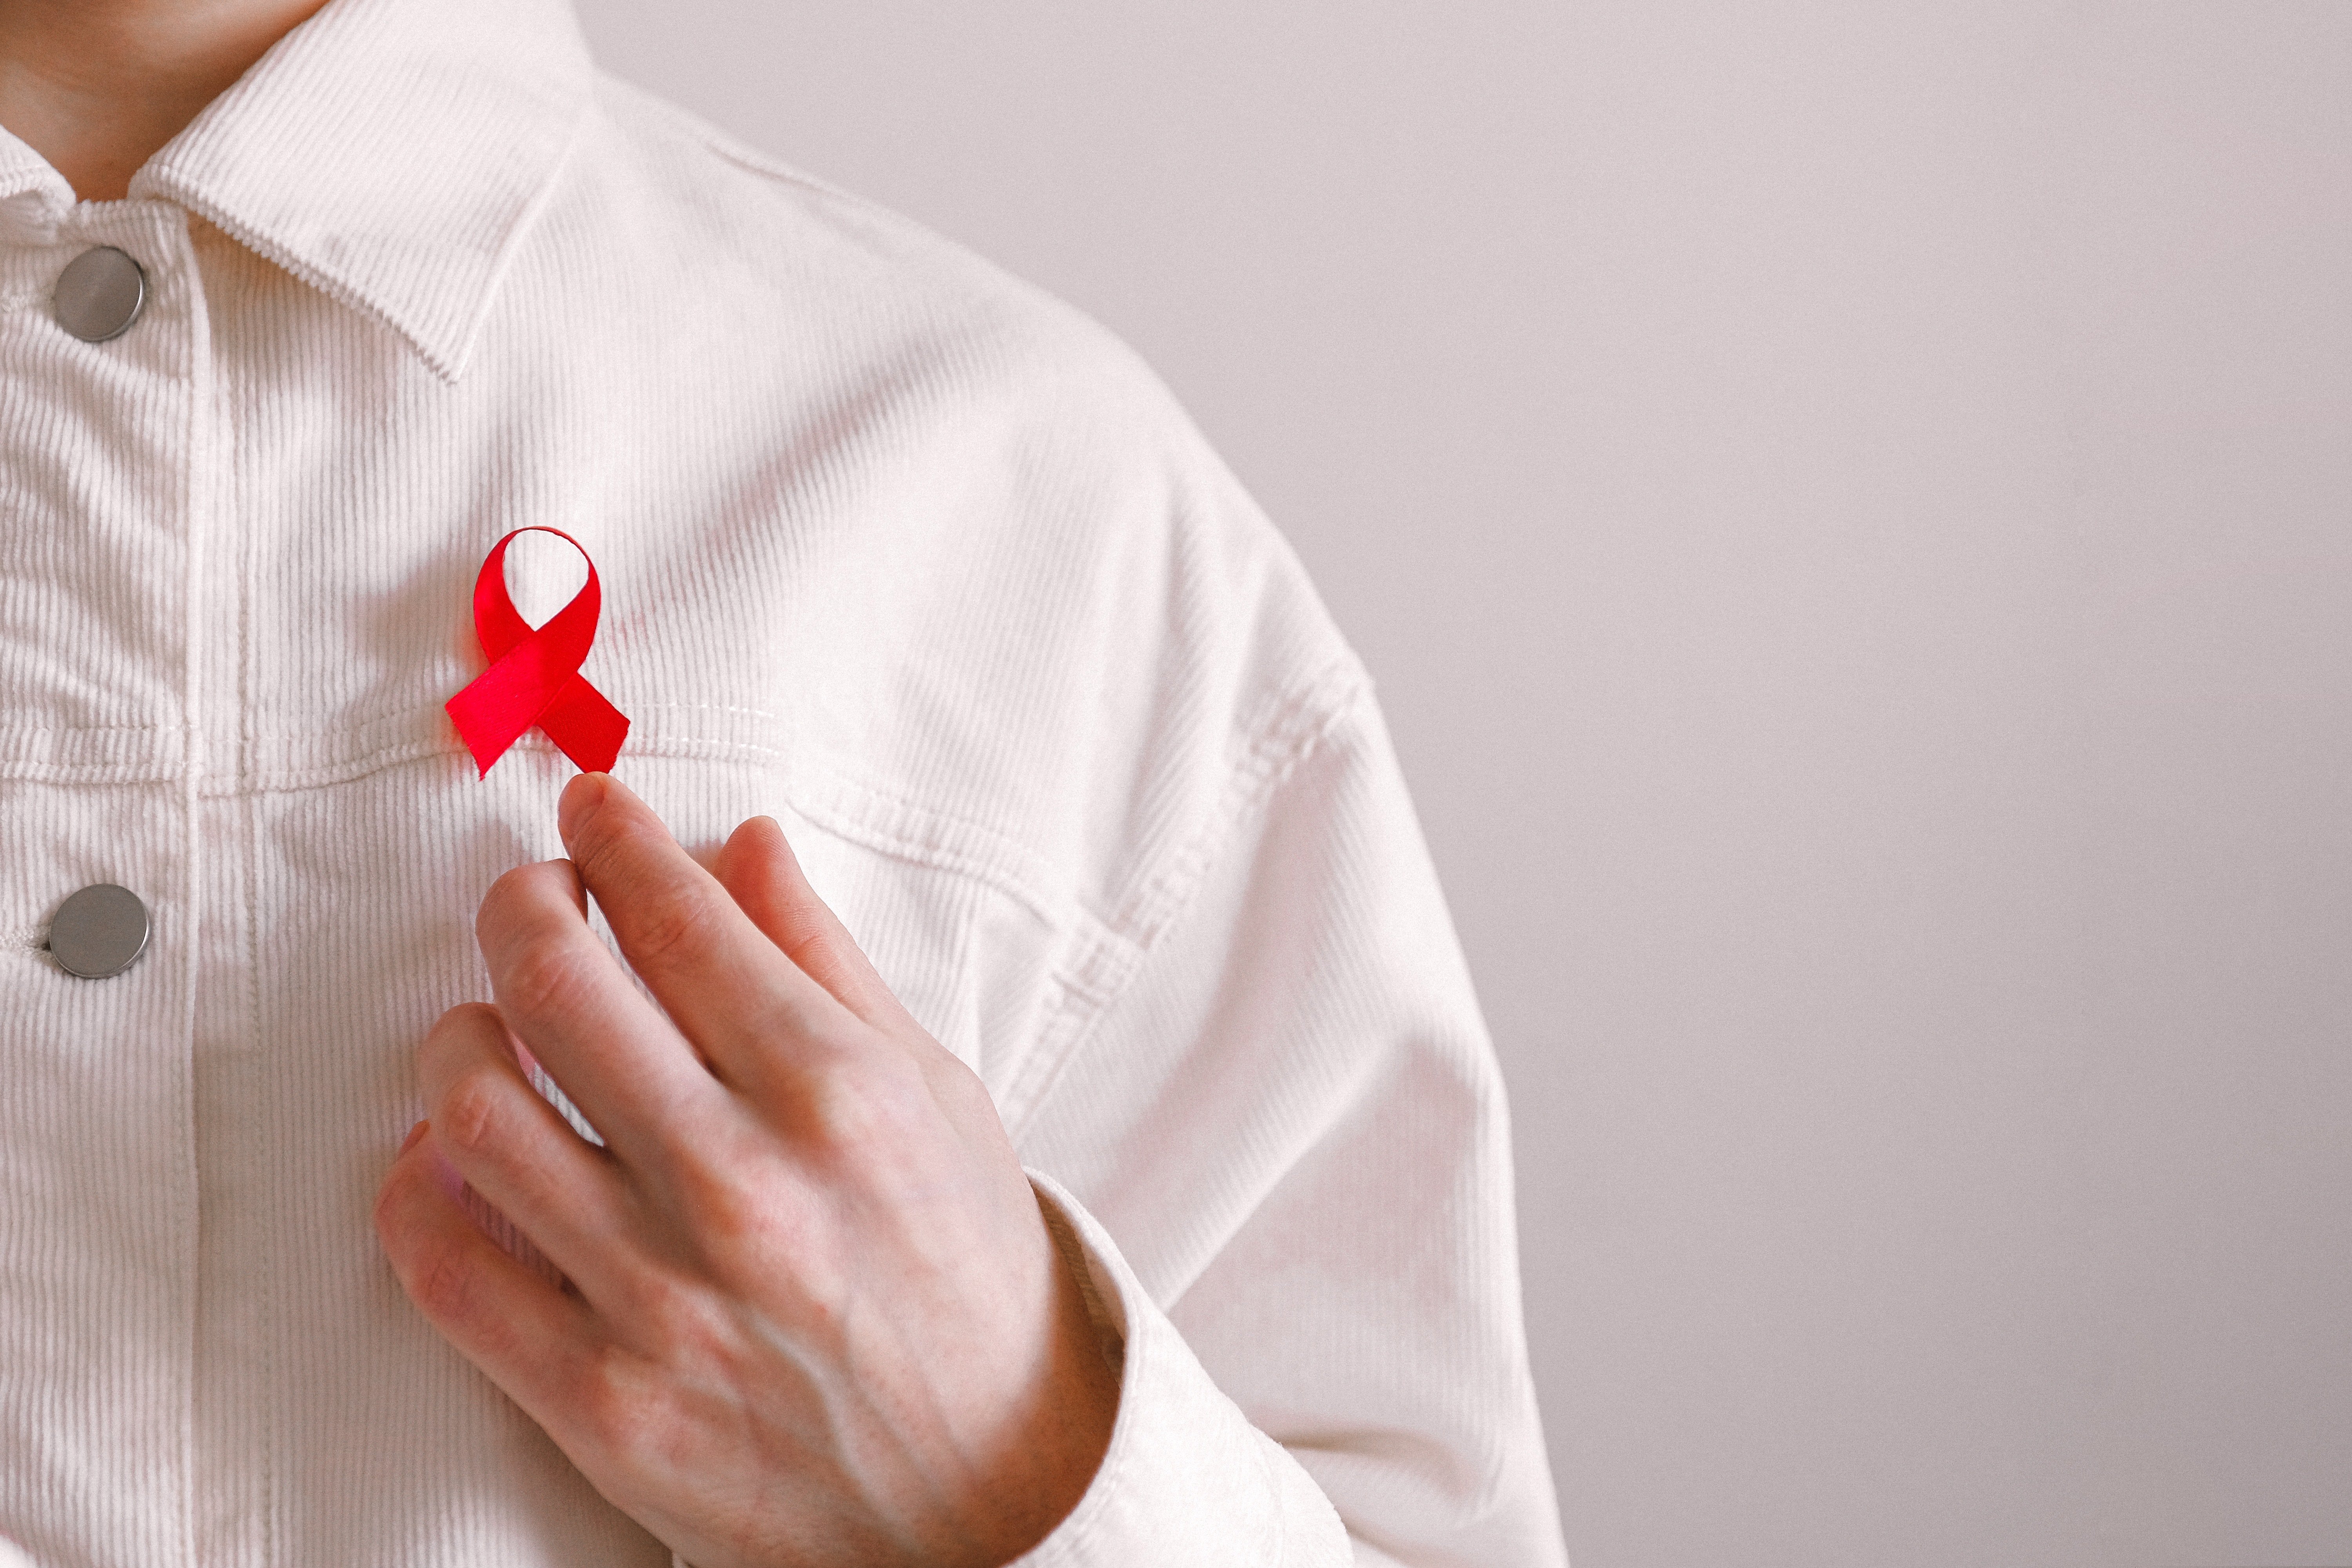 Europa aprueba lenacapavir (Gilead), única opción de tratamiento contra VIH